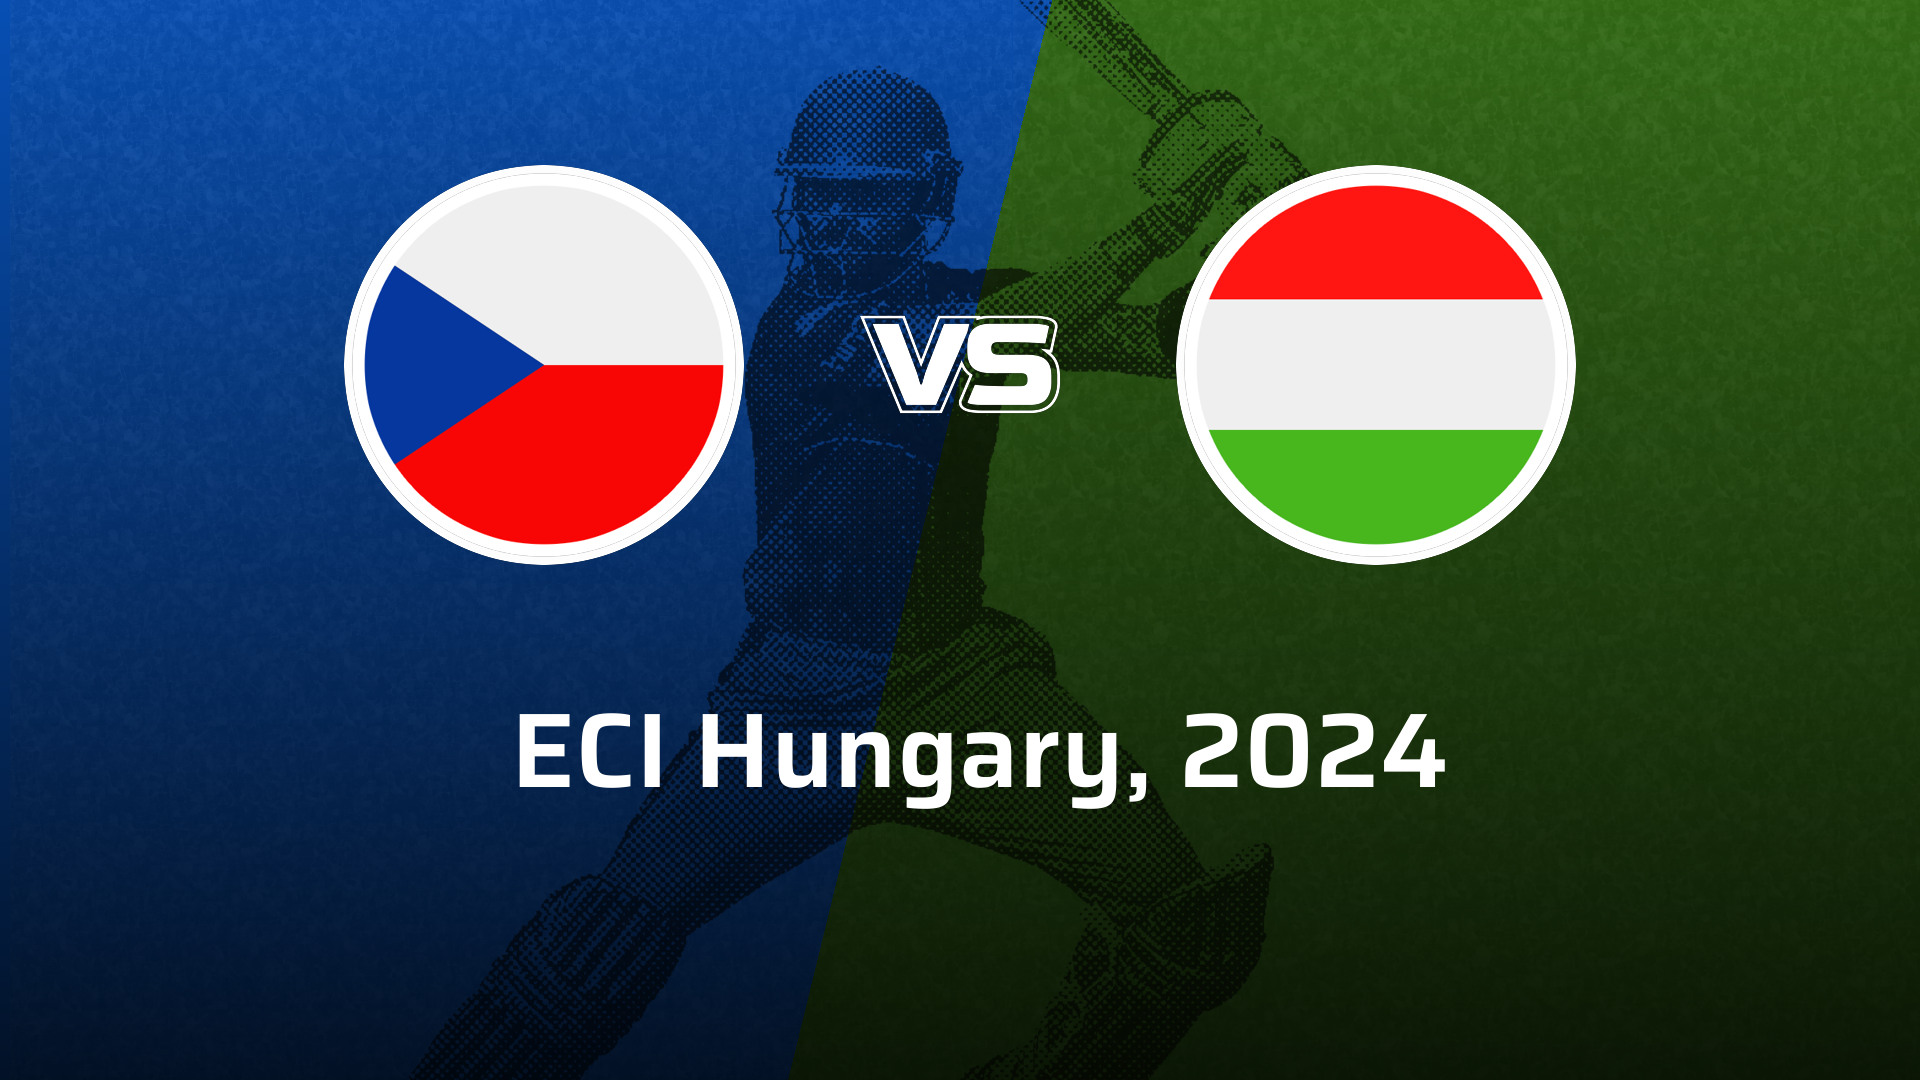 Hungary VS Czechia